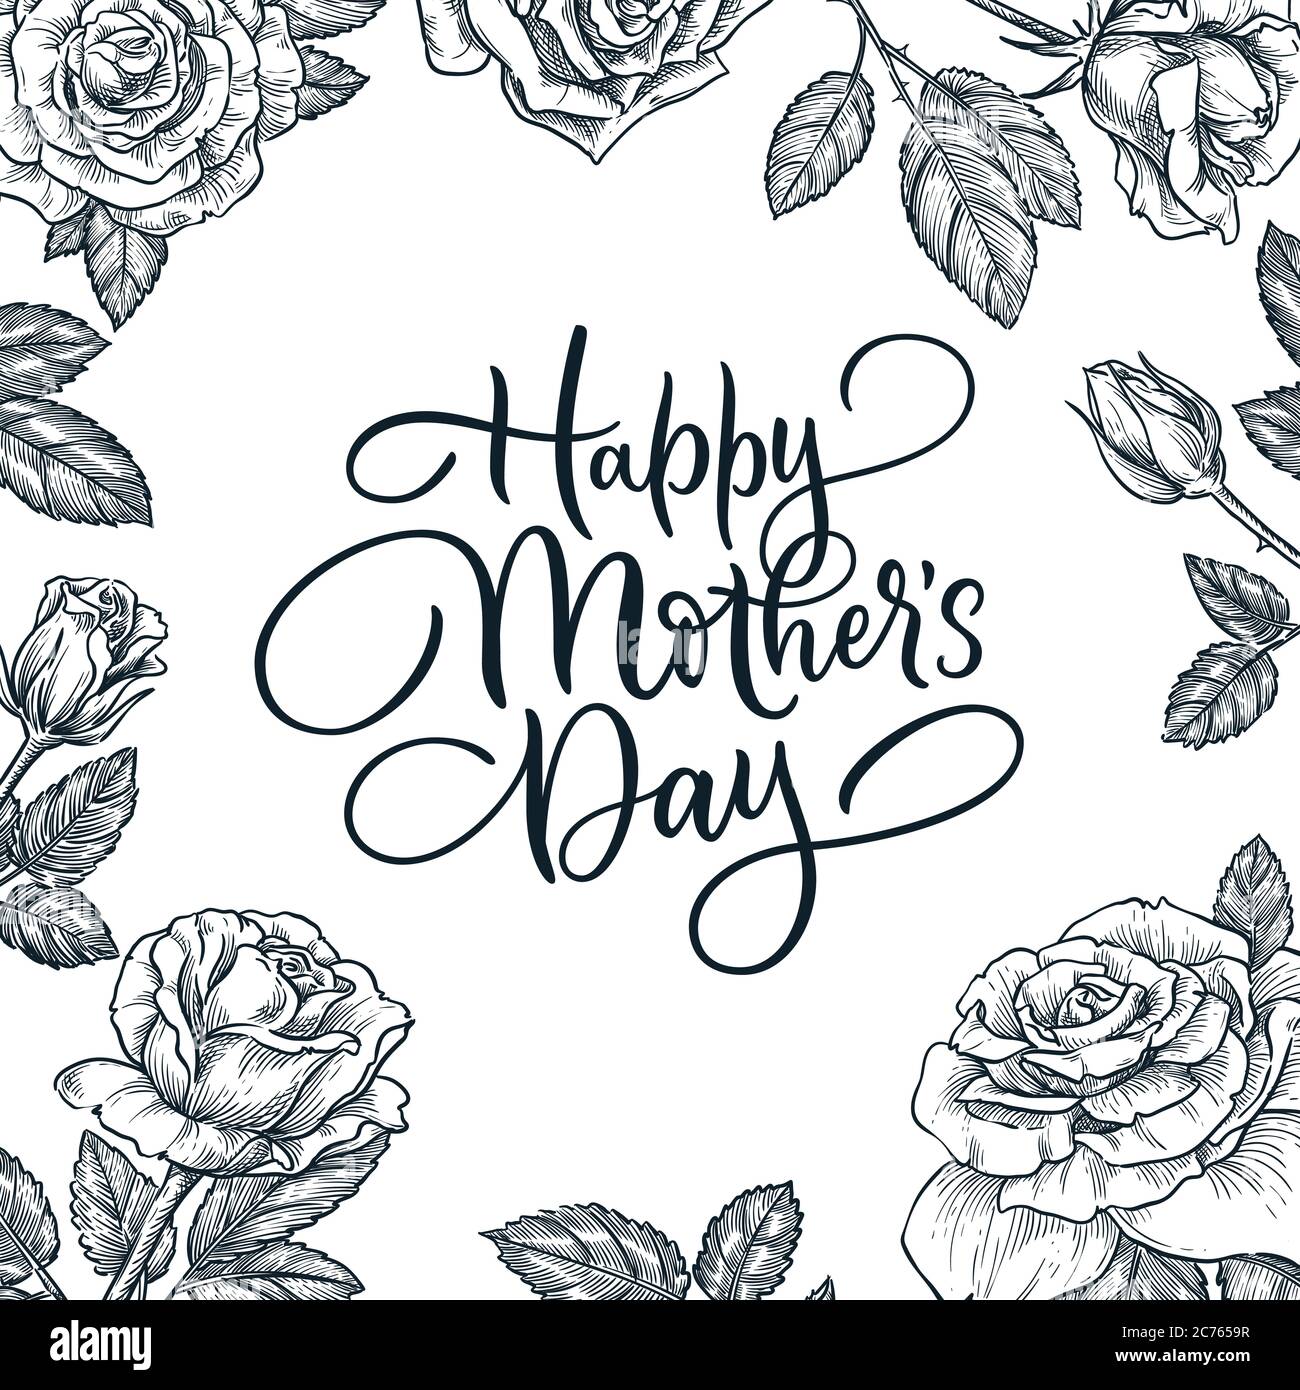 Happy Mothers Day Grußkarte Dekoration mit handgezeichneten Urlaub Kalligraphie Schriftzug. Quadratischer Rahmen mit blühenden Rosen Blumen und Blättern. Vektor s Stock Vektor